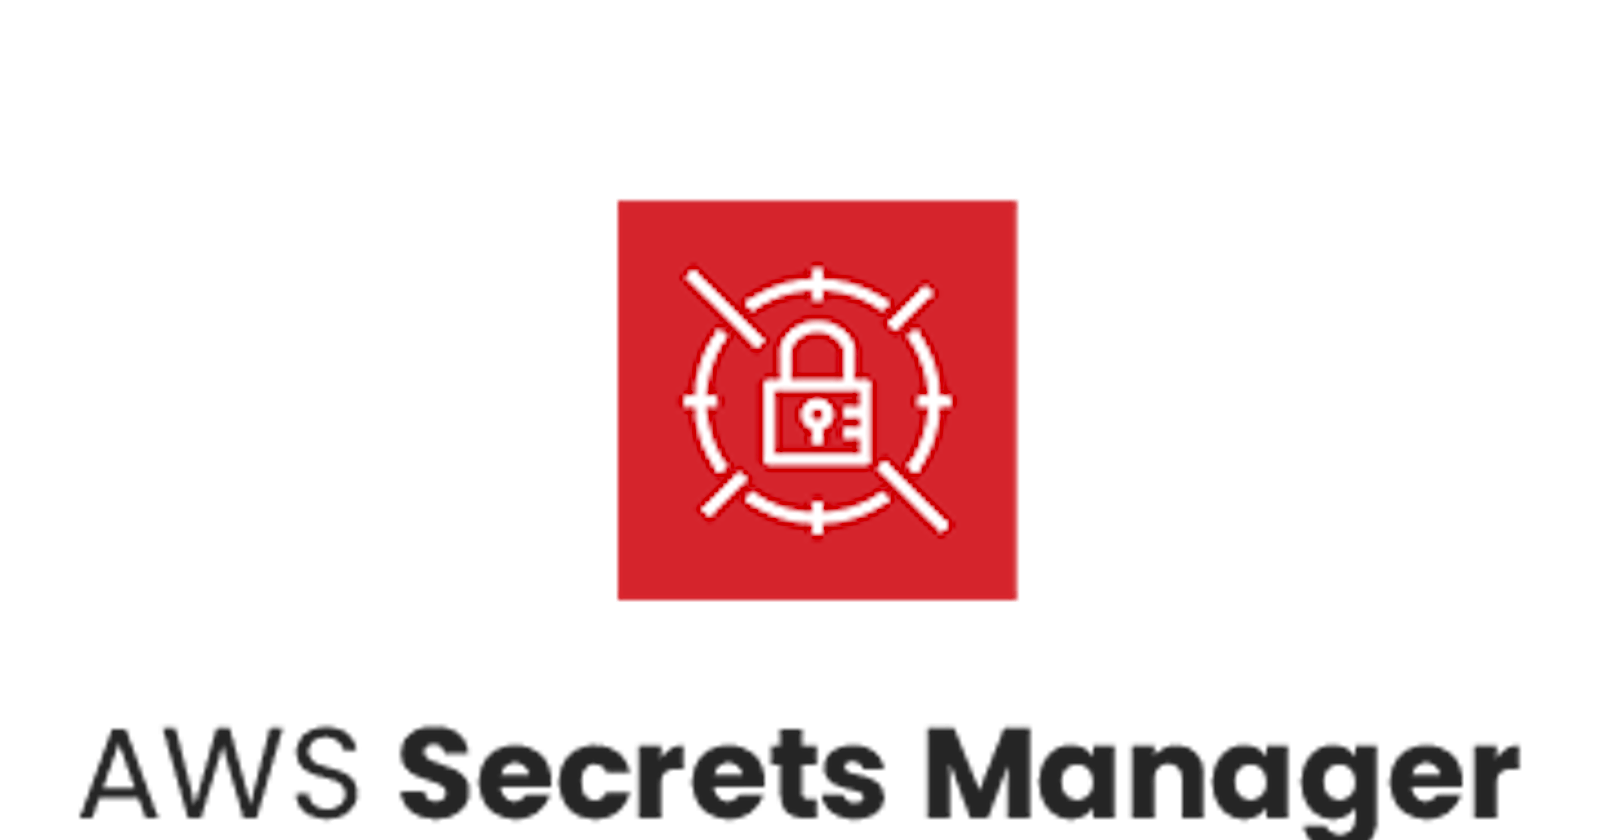 AWS Secrets Manager